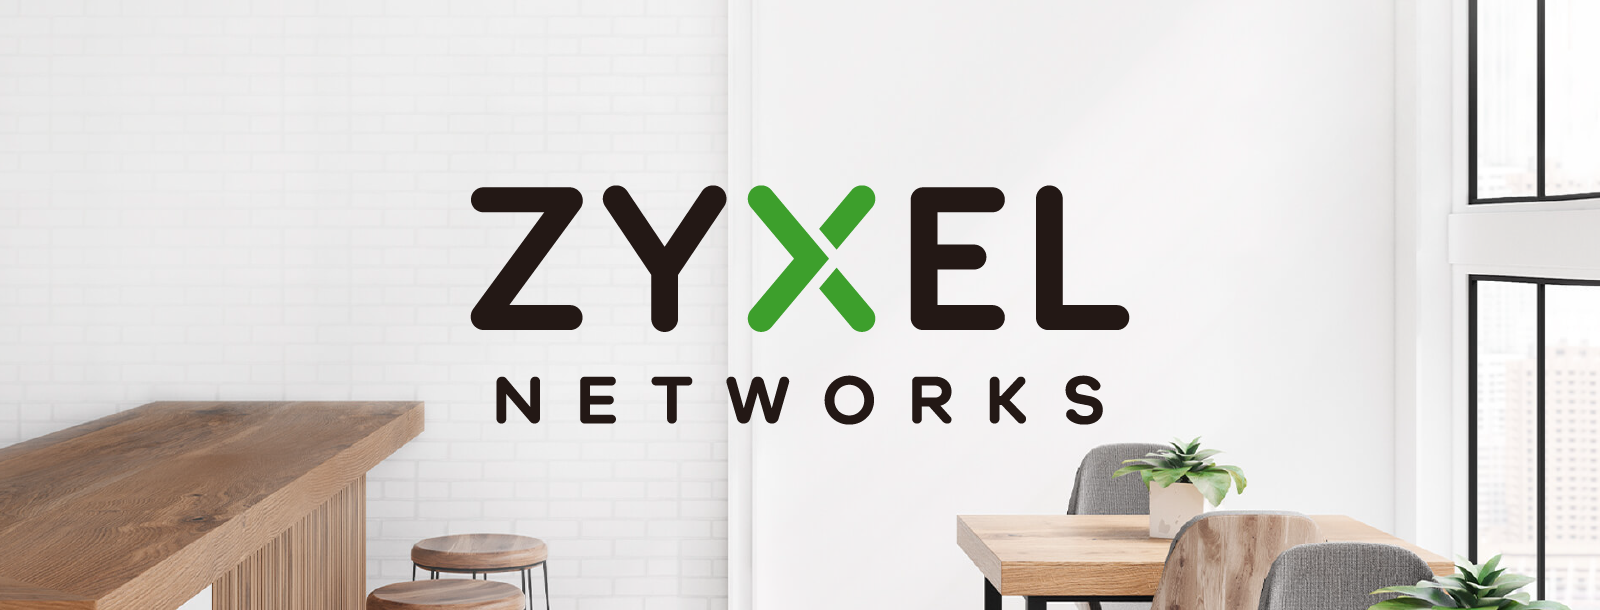 Zyxel Wire Killer –  punkty dostępowe dla każdego